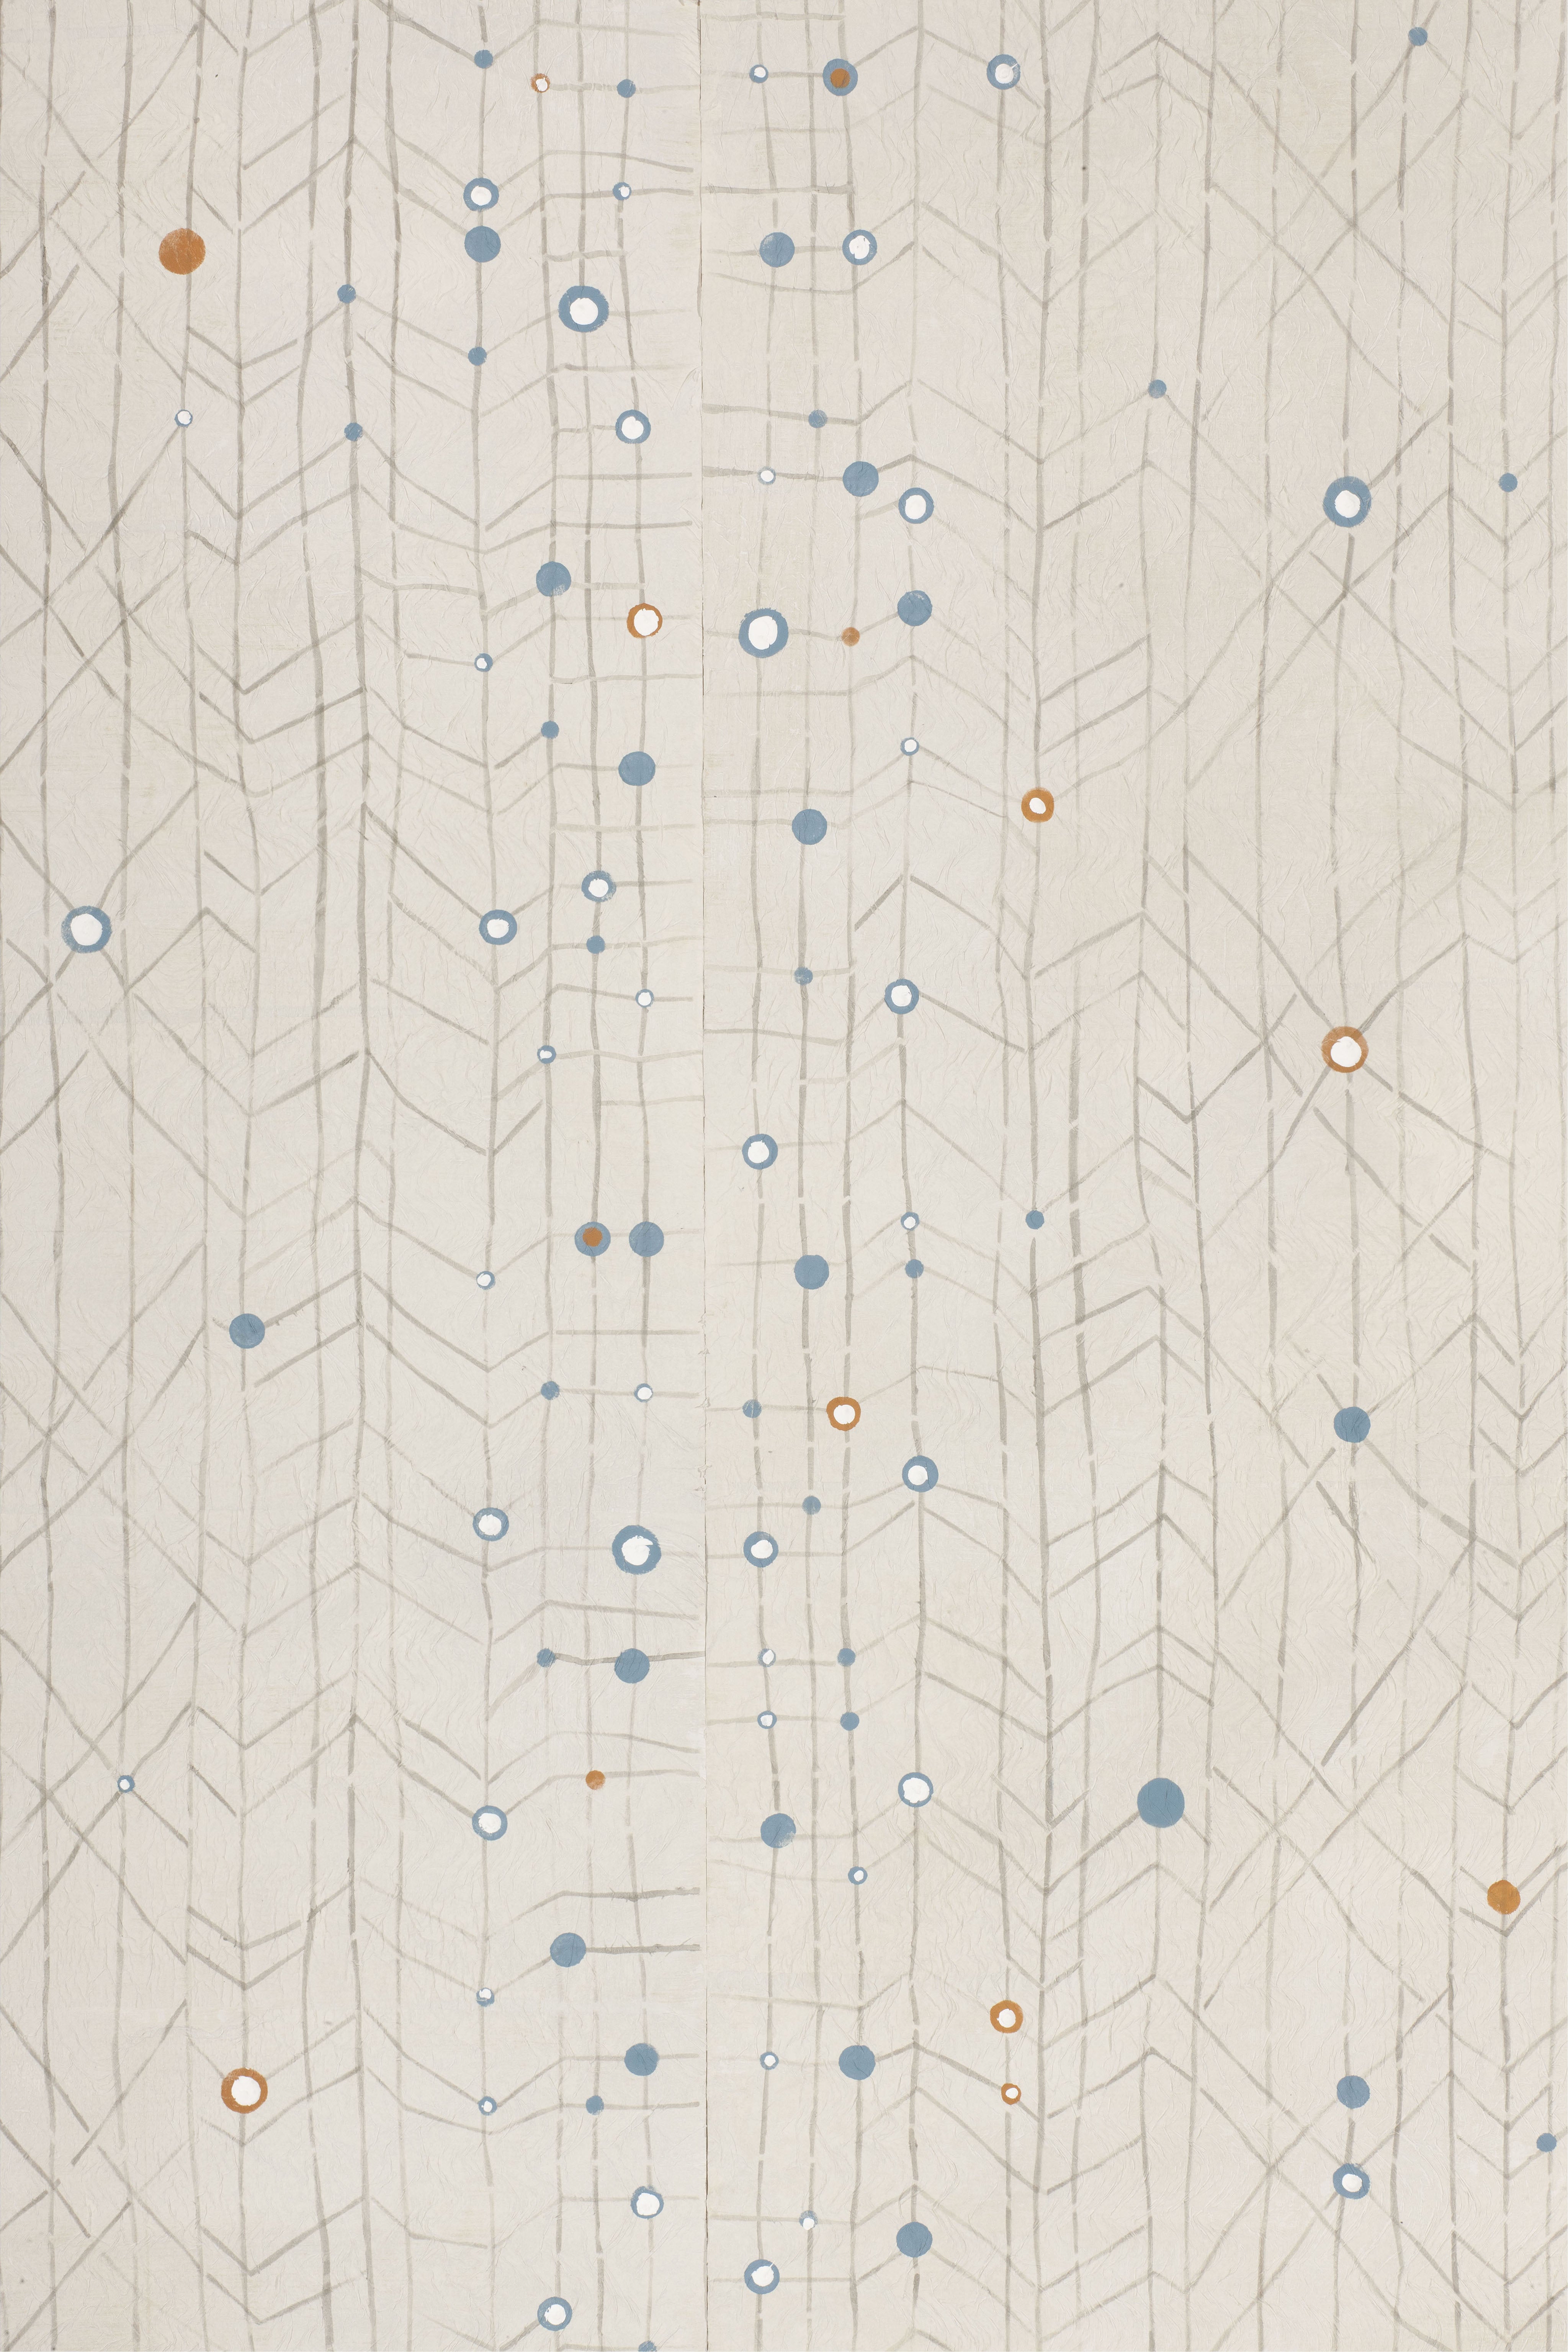 Fabscarte Handmade Hand Painted Wallpaper, Paul Klee, Musicale